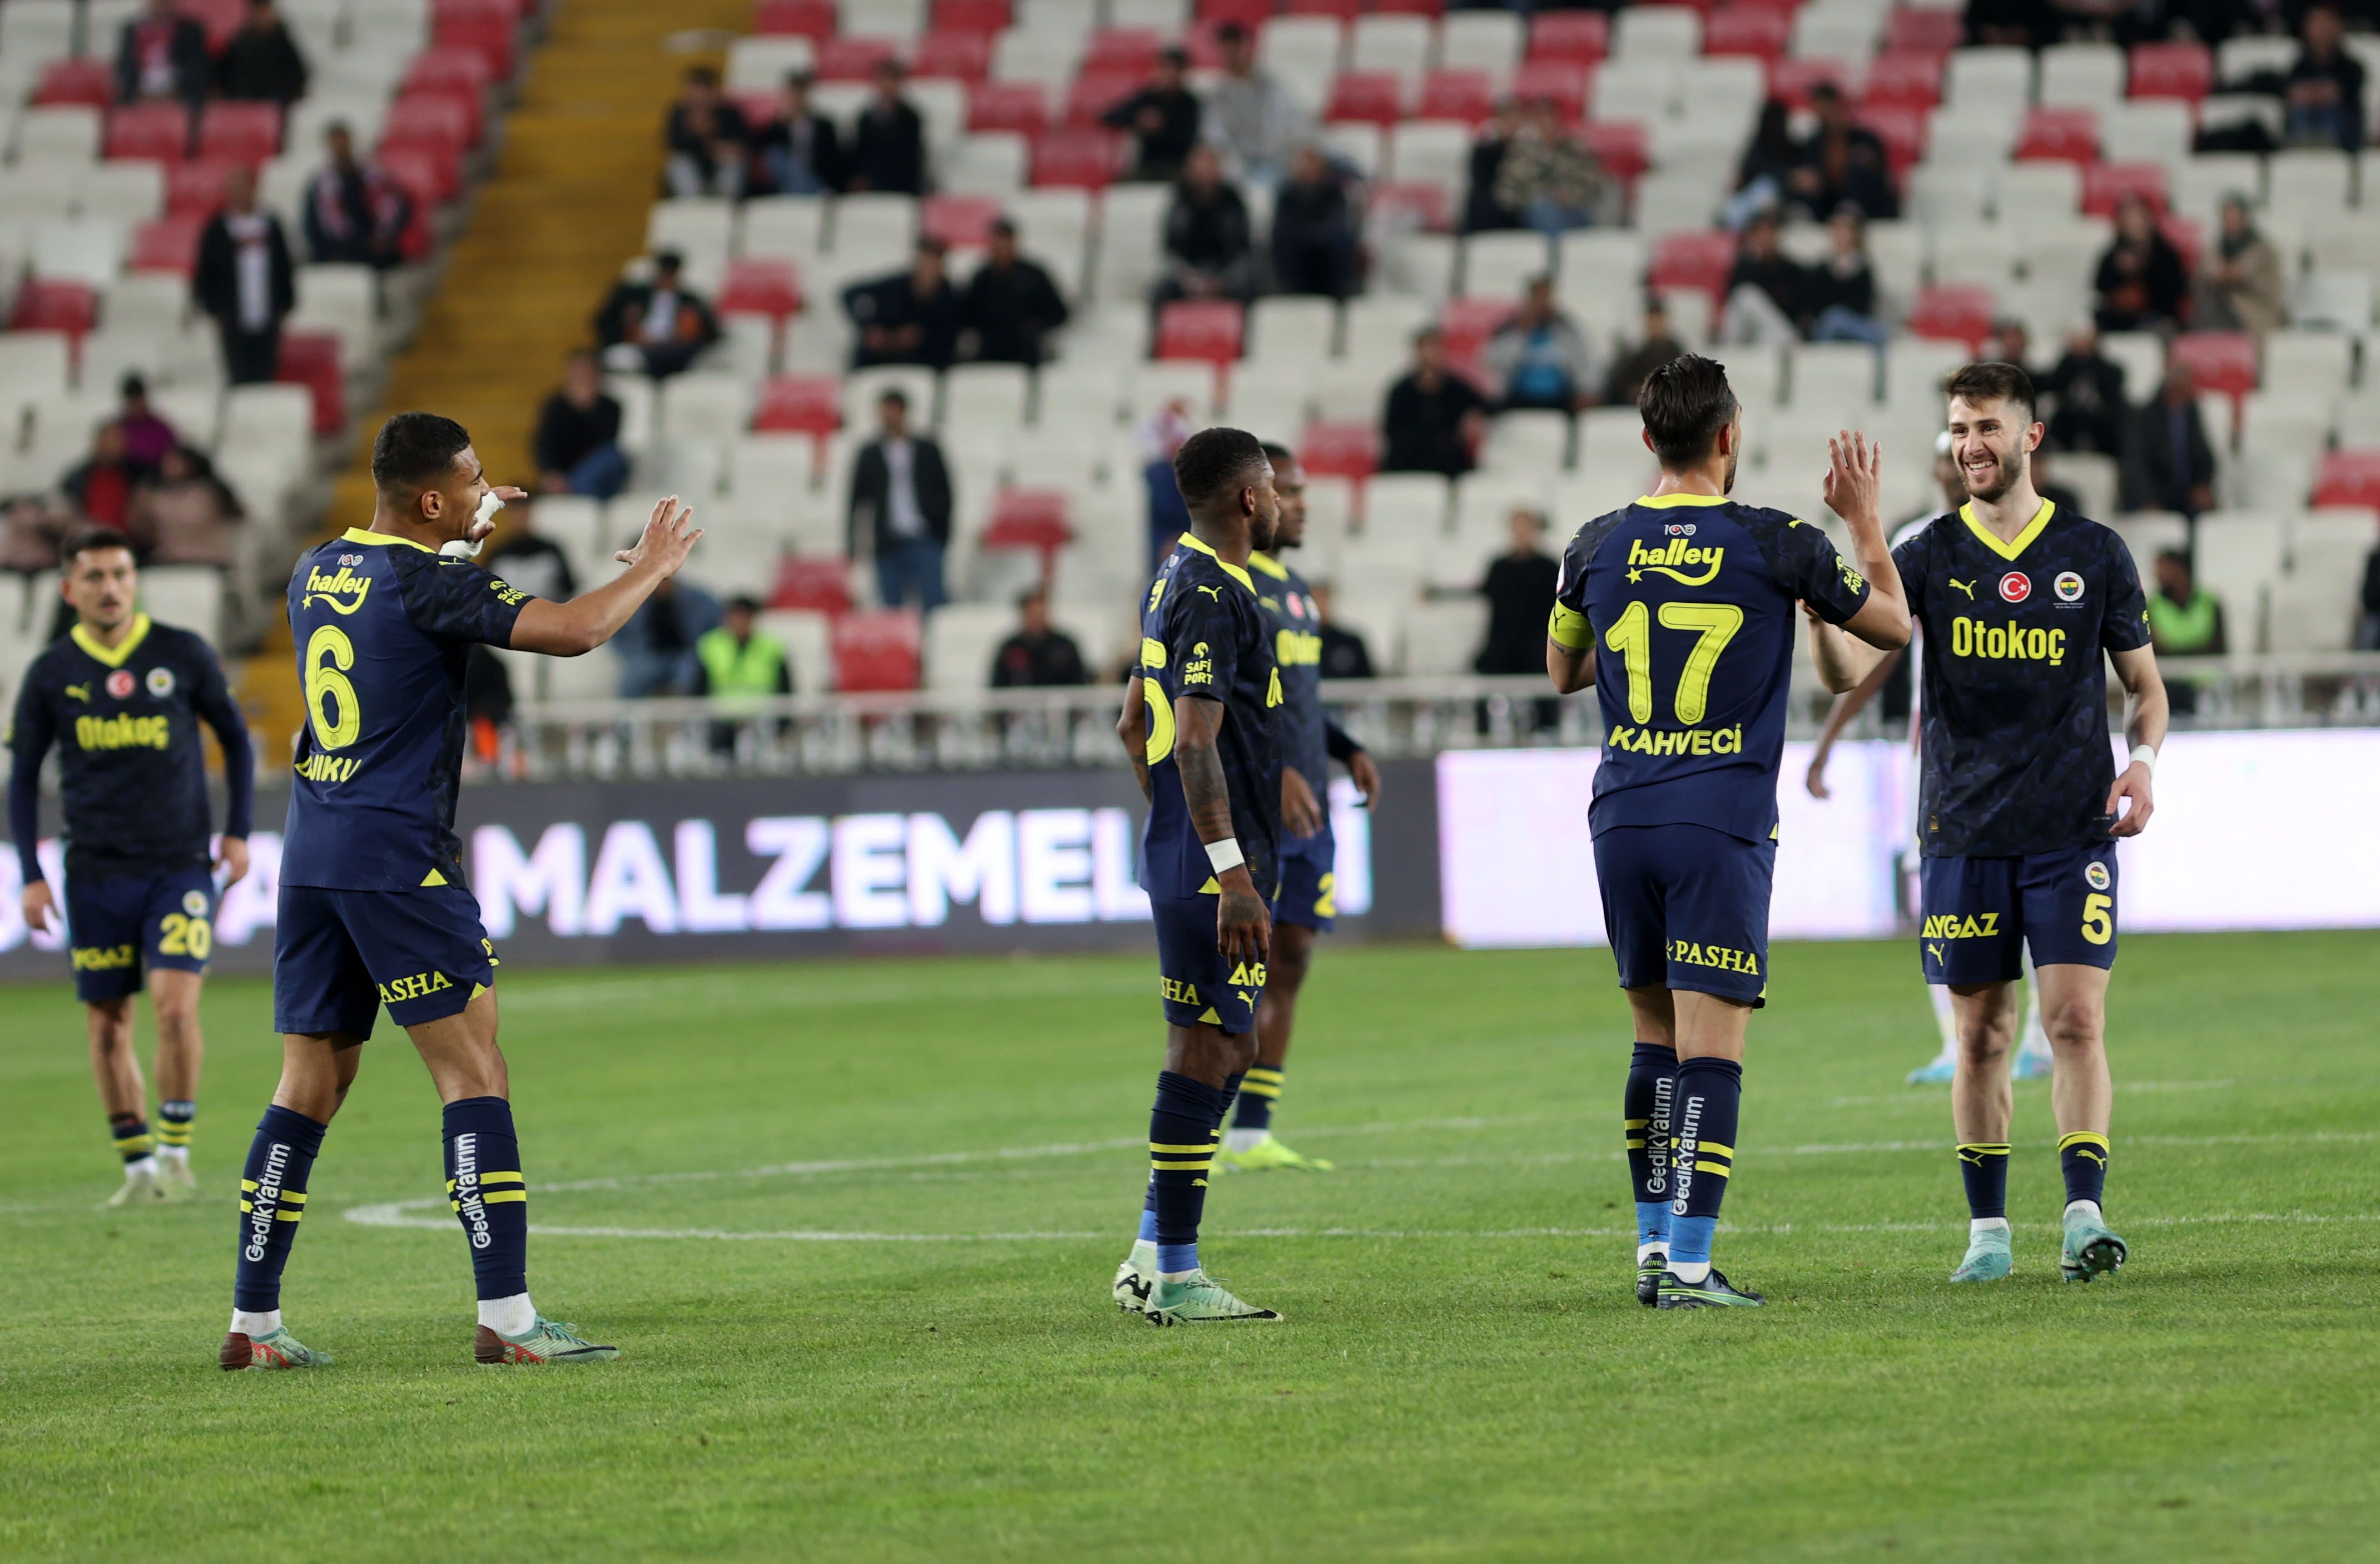 Şampiyonluk yarışında Fenerbahçe'ye ağır darbe! Galatasaray ile puan farkı 4 oldu - 2. Resim